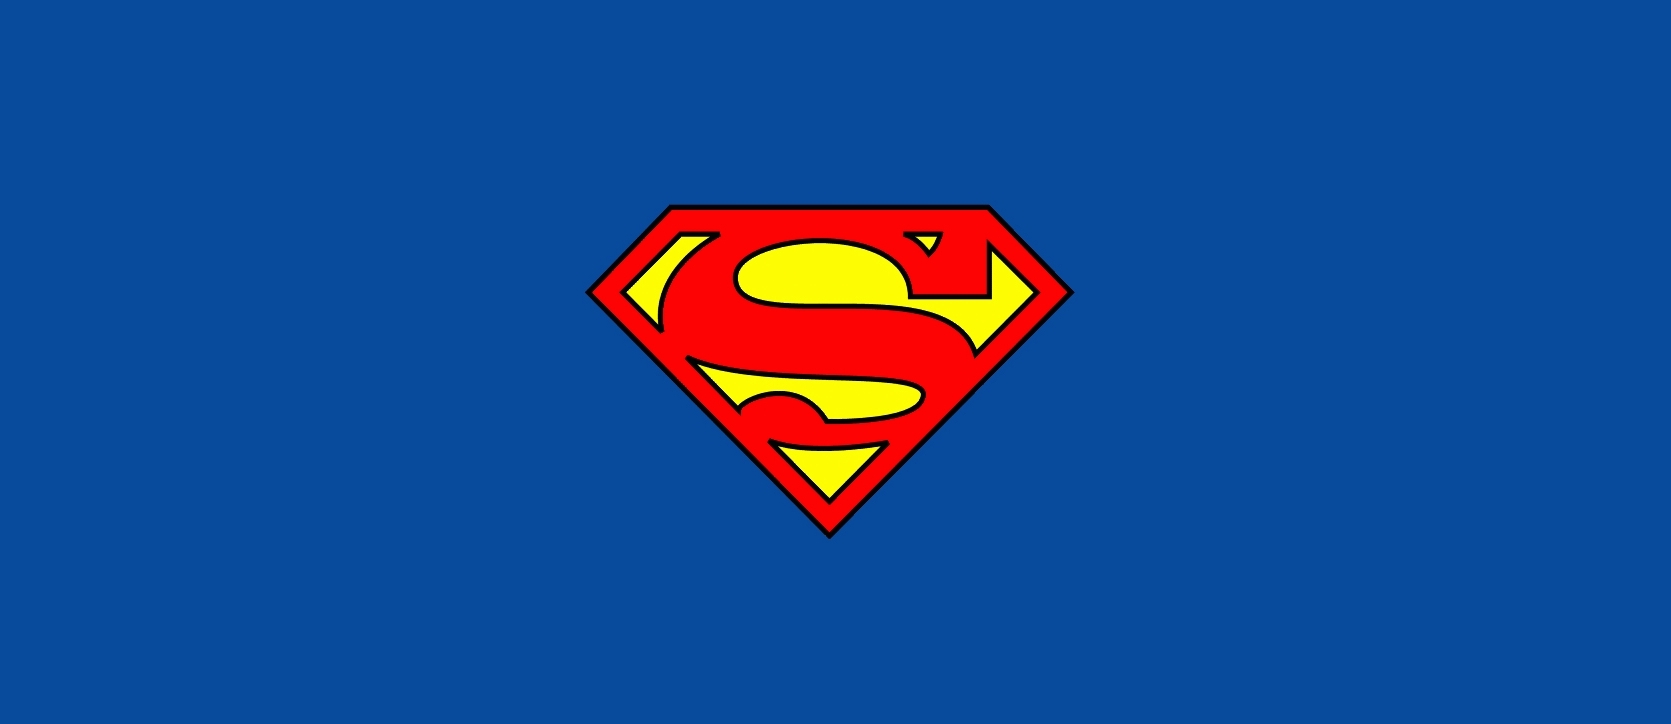 superman logo fondo de pantalla,superhombre,personaje de ficción,superhéroe,liga de la justicia,símbolo